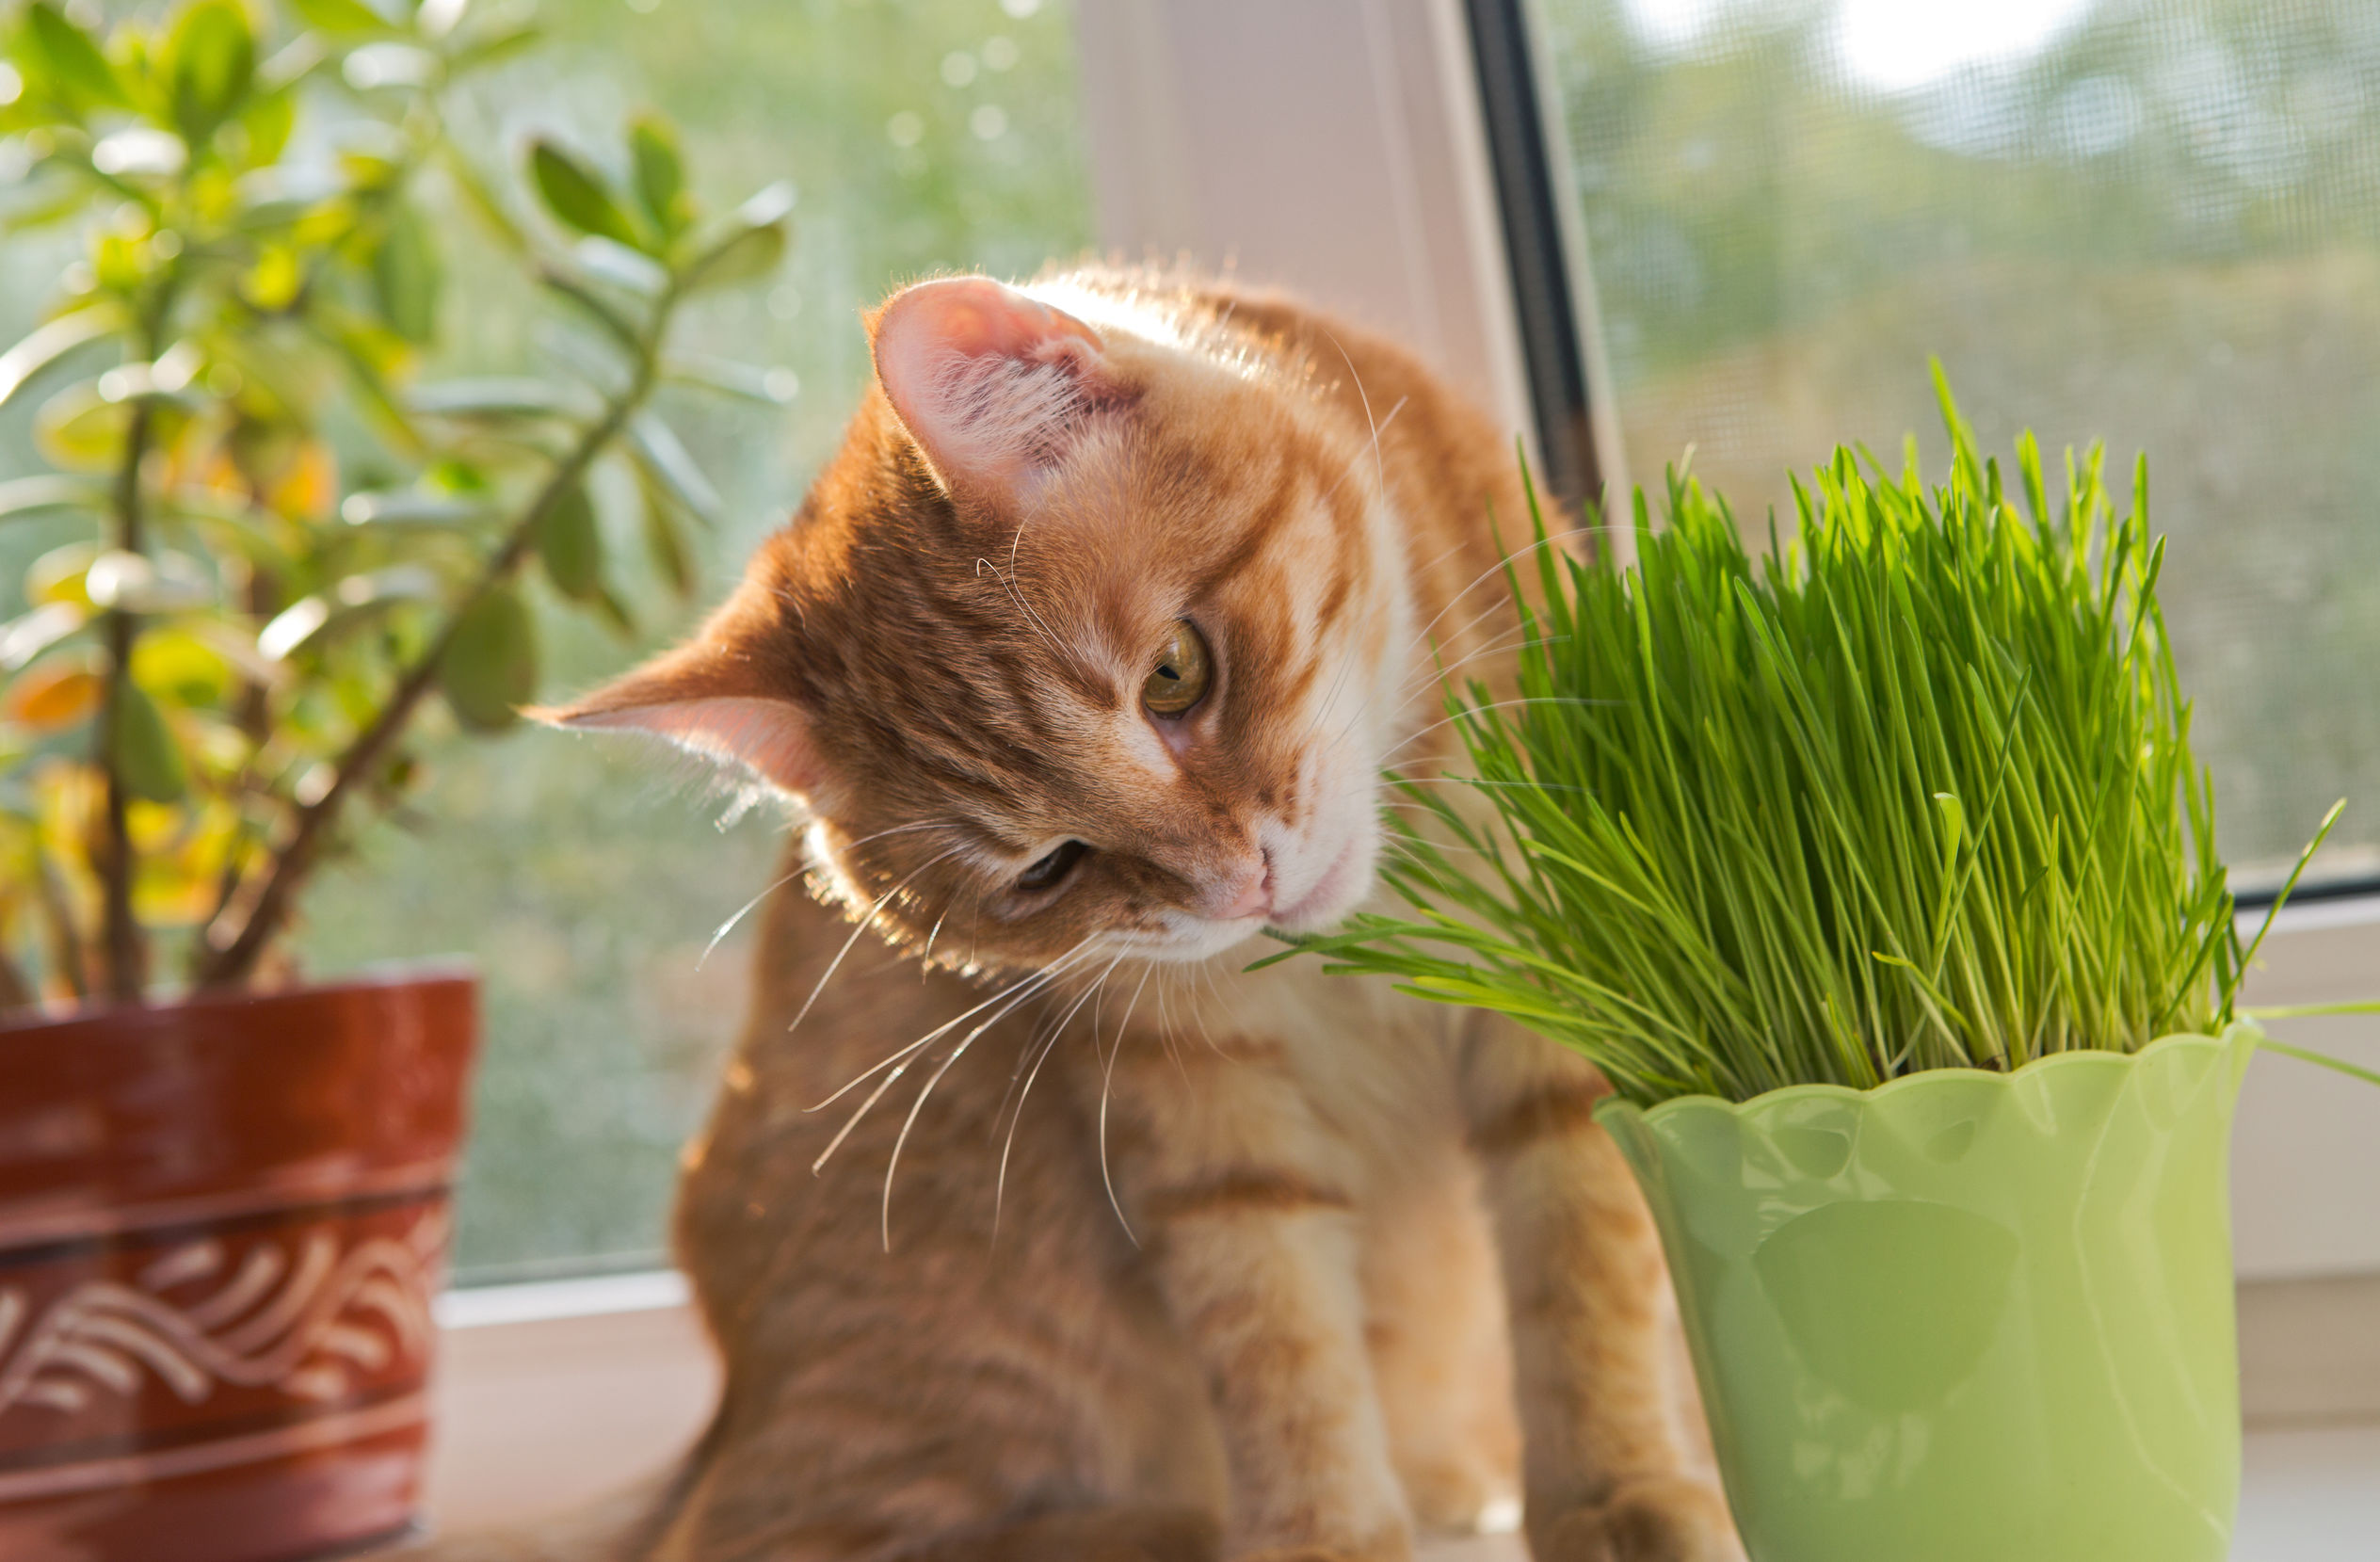 Pourquoi mon chat mange-t-il de l'herbe ? Est-ce pour se purger ?